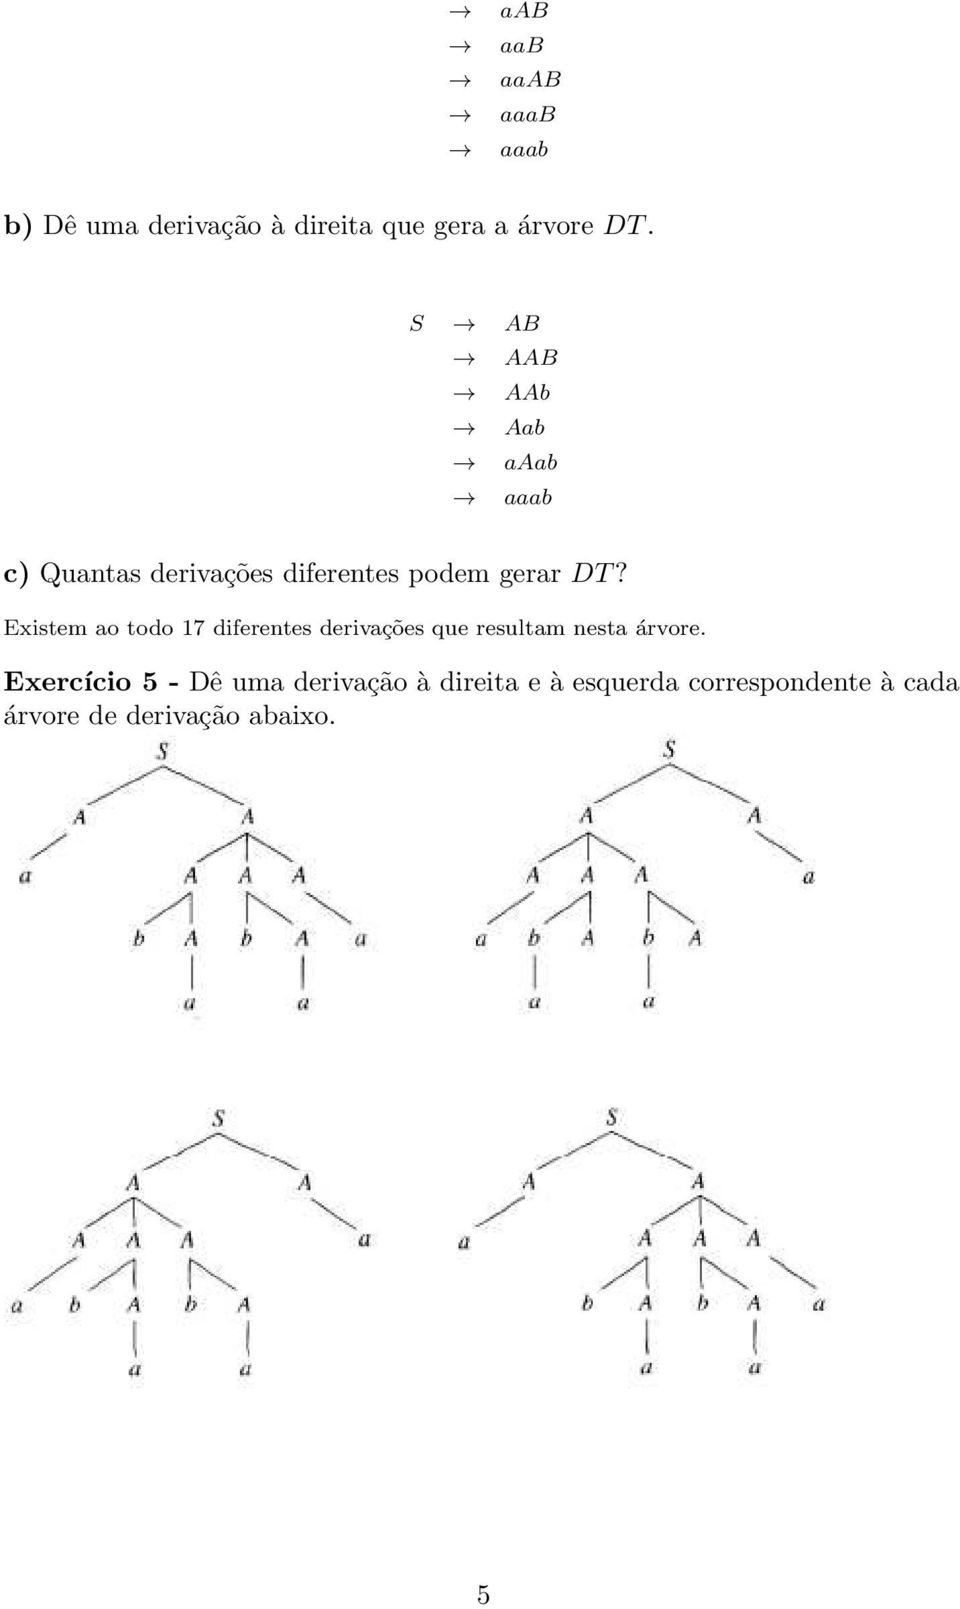 Existem ao todo 17 diferentes derivações que resultam nesta árvore.